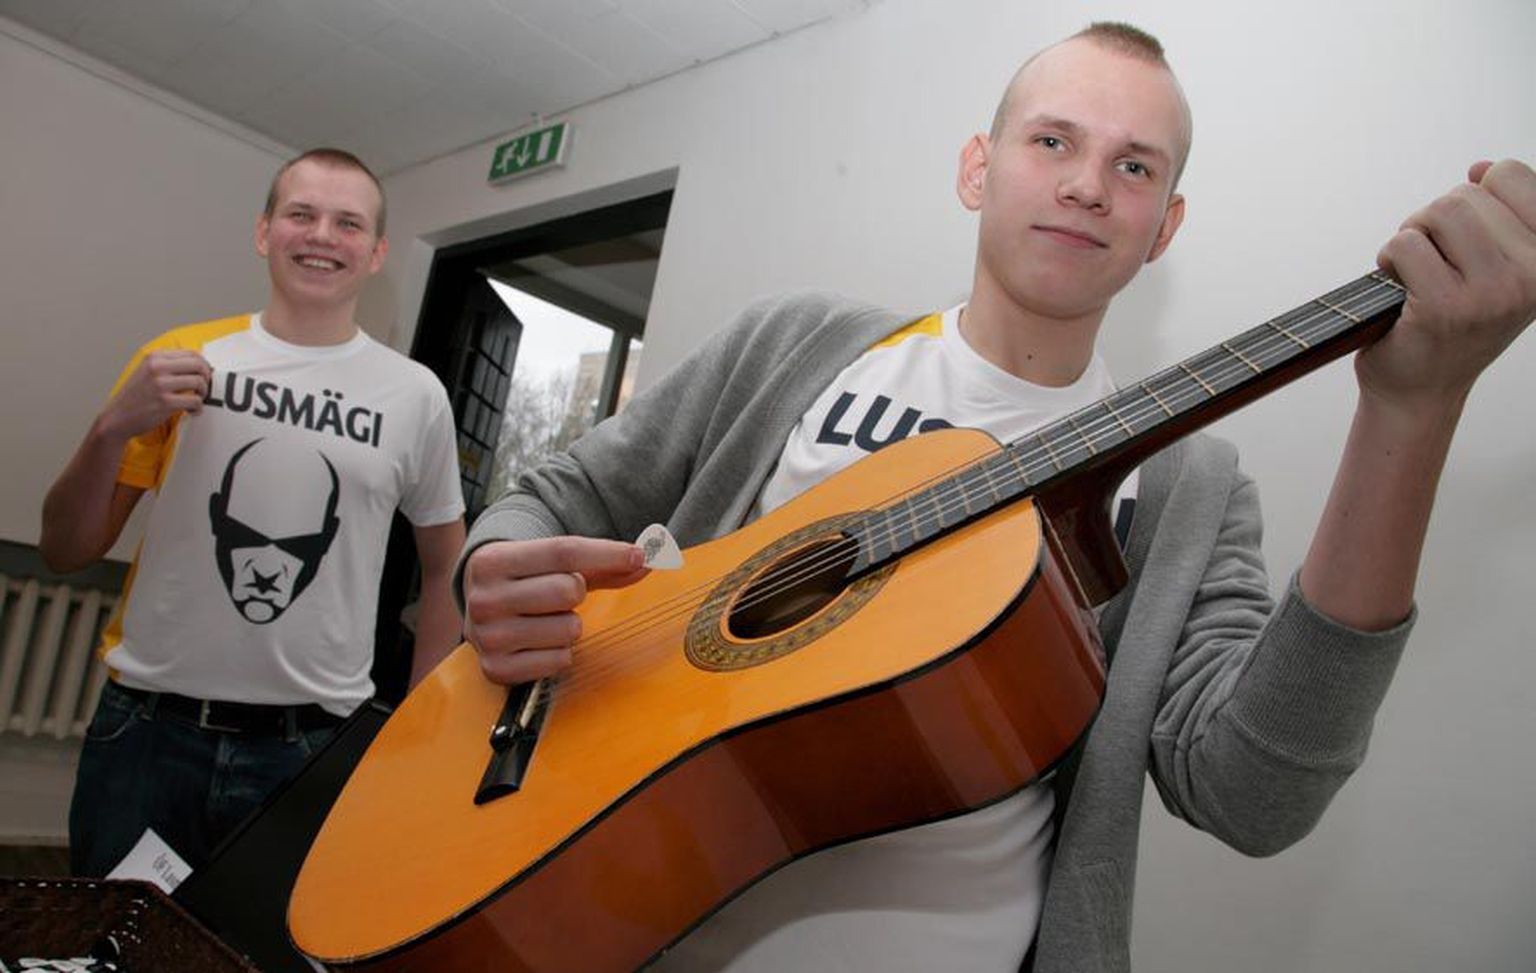 Vennad Rainer (vasakul) ja Ragnar Lusmägi kandsid äriideede konkursi finaalis plektroni uusima kujundusega särke.